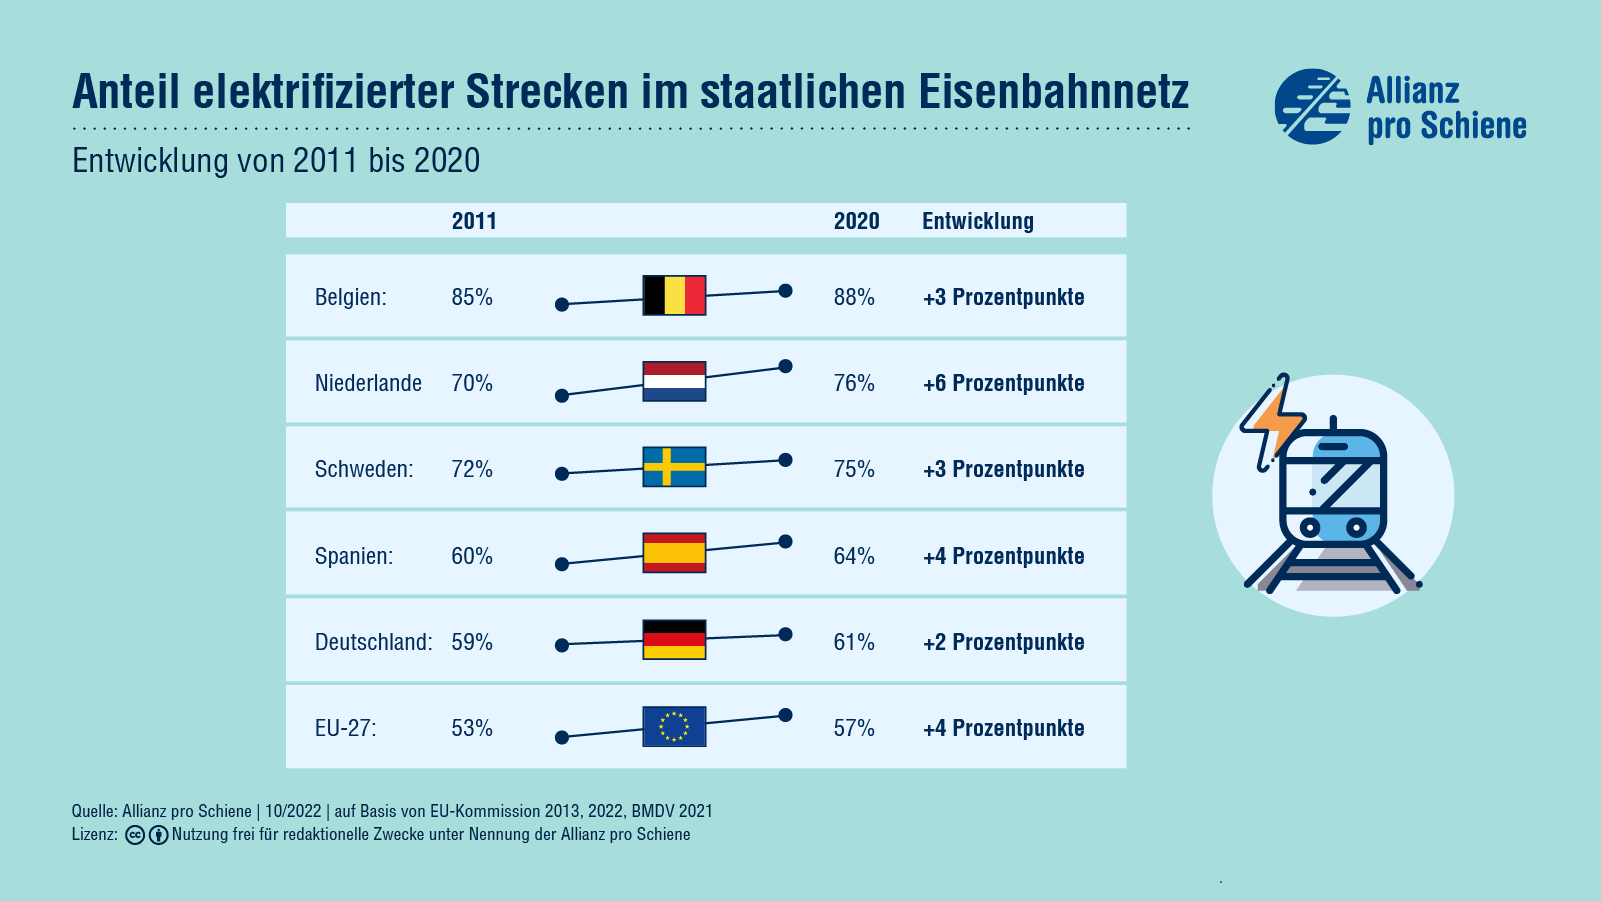 Anteil der elektrifizierten Bahnstrecken im europäischen Vergleich und deren Entwicklung von 2011 bis 2020.